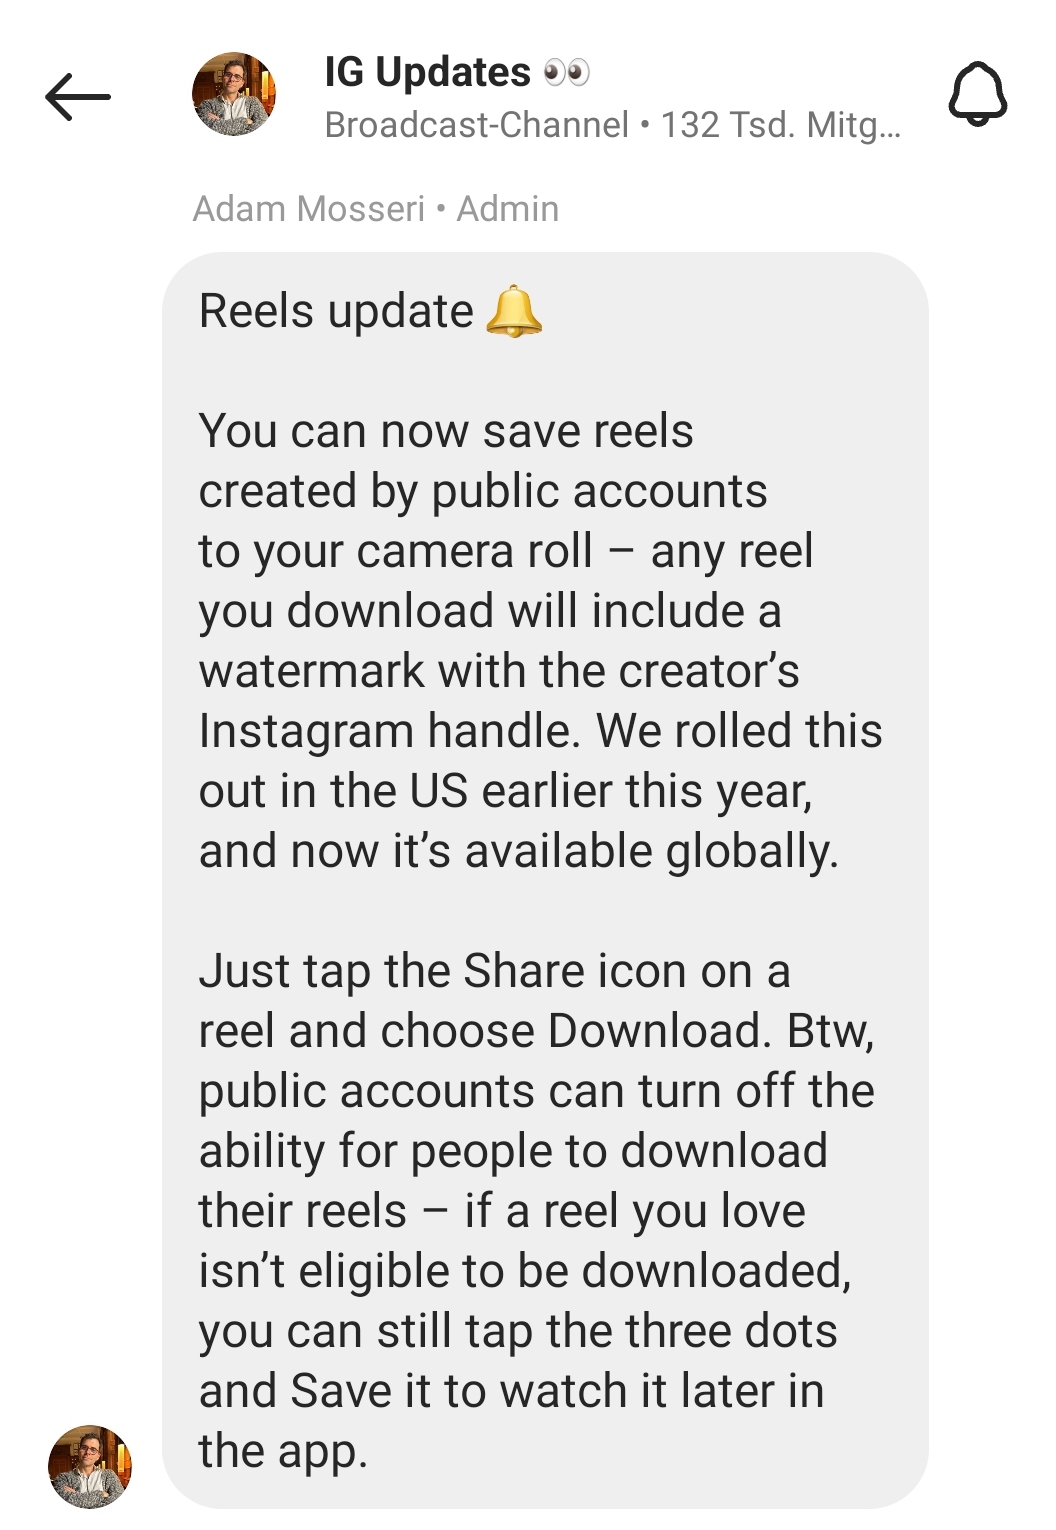 Bild zeigt die Ankündigung der Downloadfunktion für öffentliche Instagram Reels von Adam Mosseri aus seinem IG Updates Broadcast-Channel.